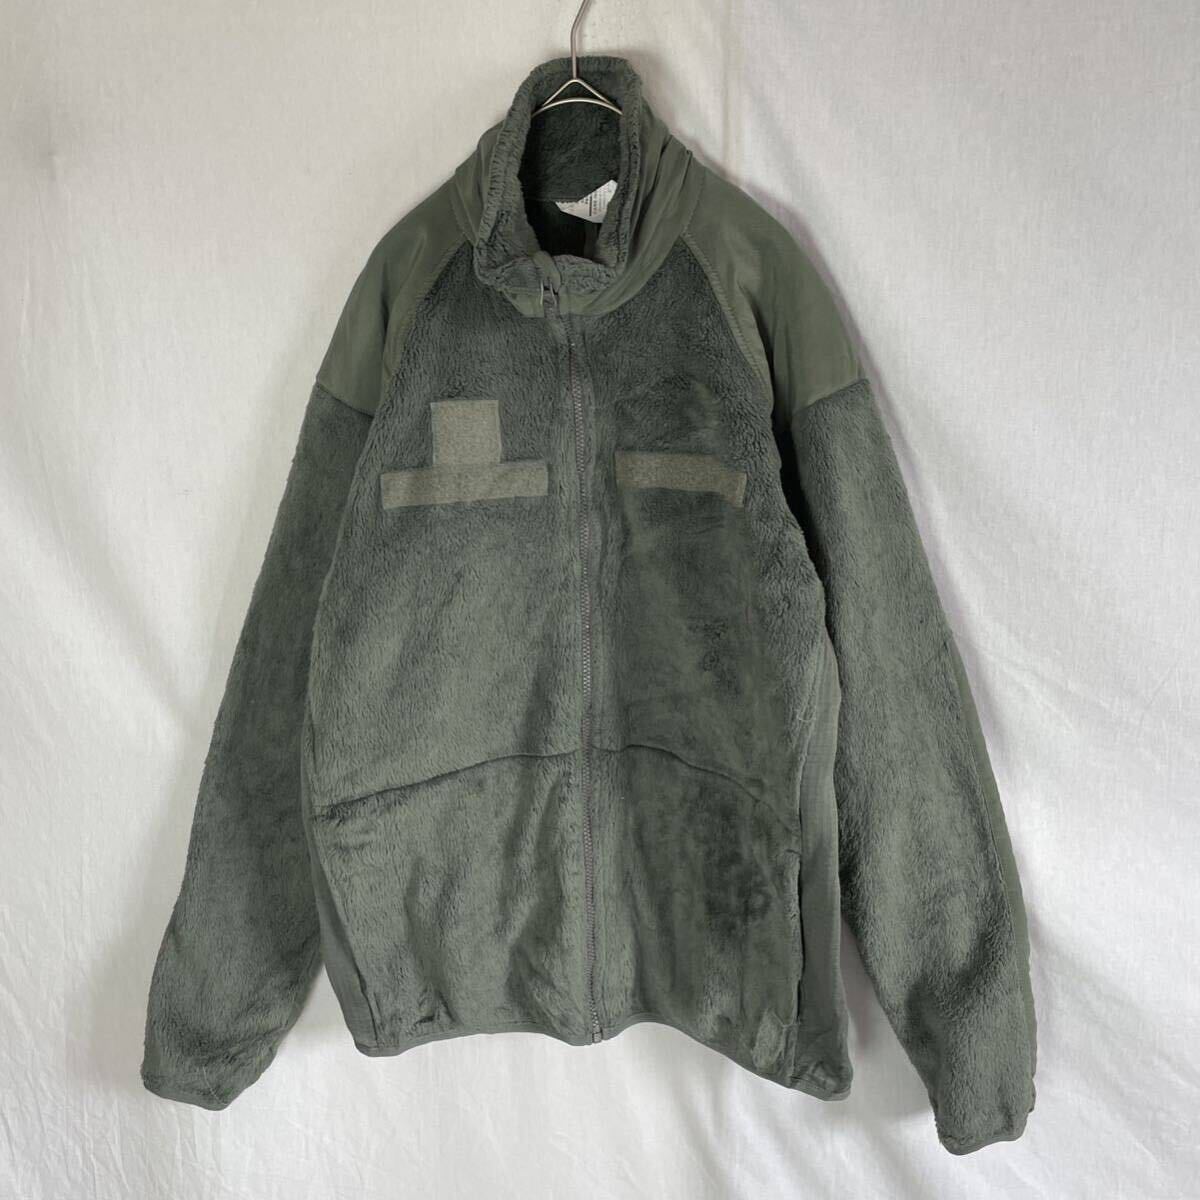 PECKHAM アメリカ製 フリースジャケット ポーラテック 古着 S-Lサイズ モスグリーン の画像1